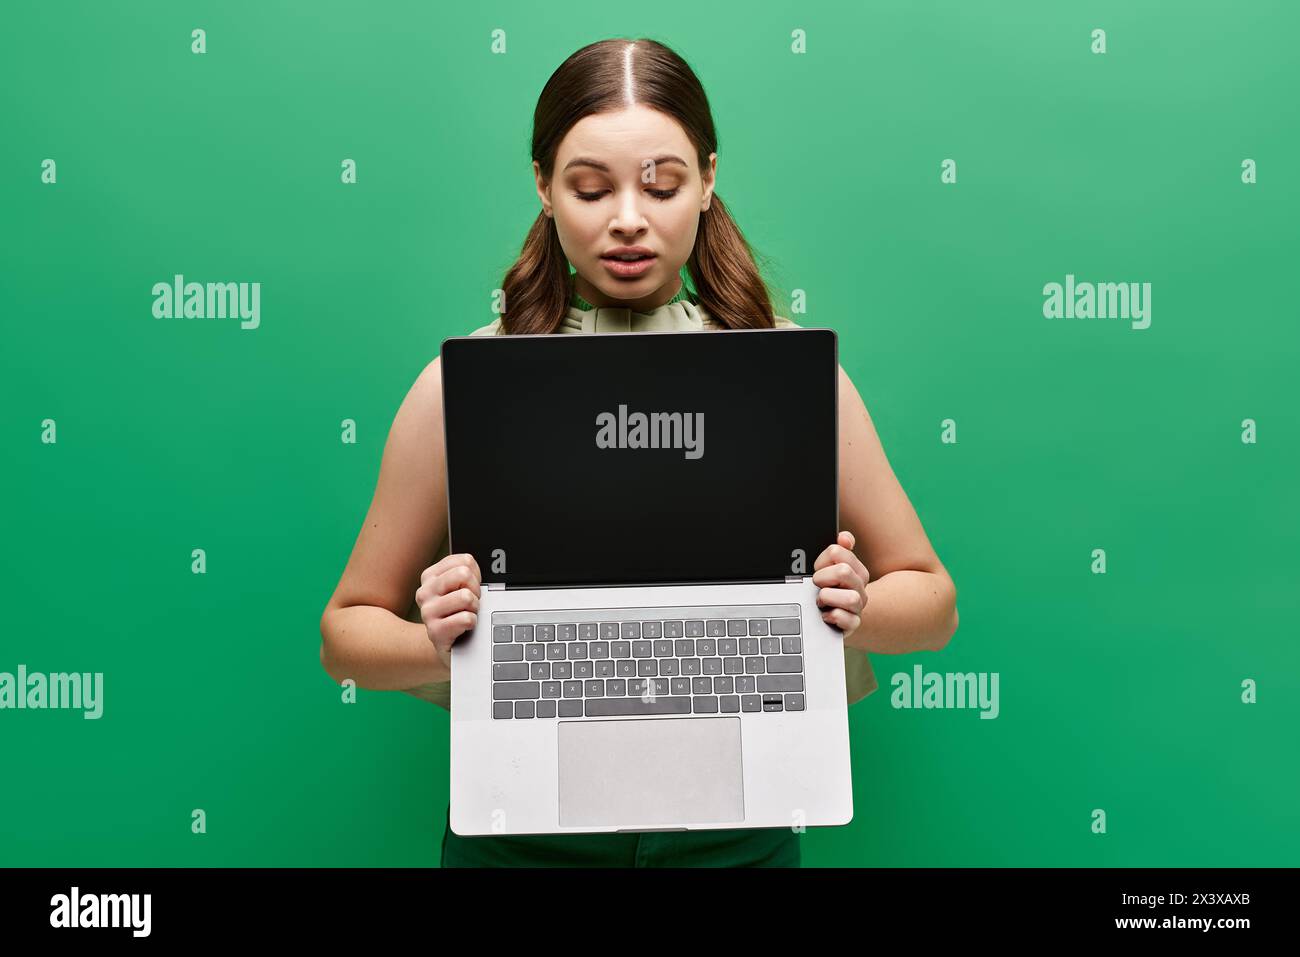 Eine junge Frau im Alter von 20 hält einen Laptop vor ihr Gesicht und verdeckt ihre Identität in einem Studio. Stockfoto